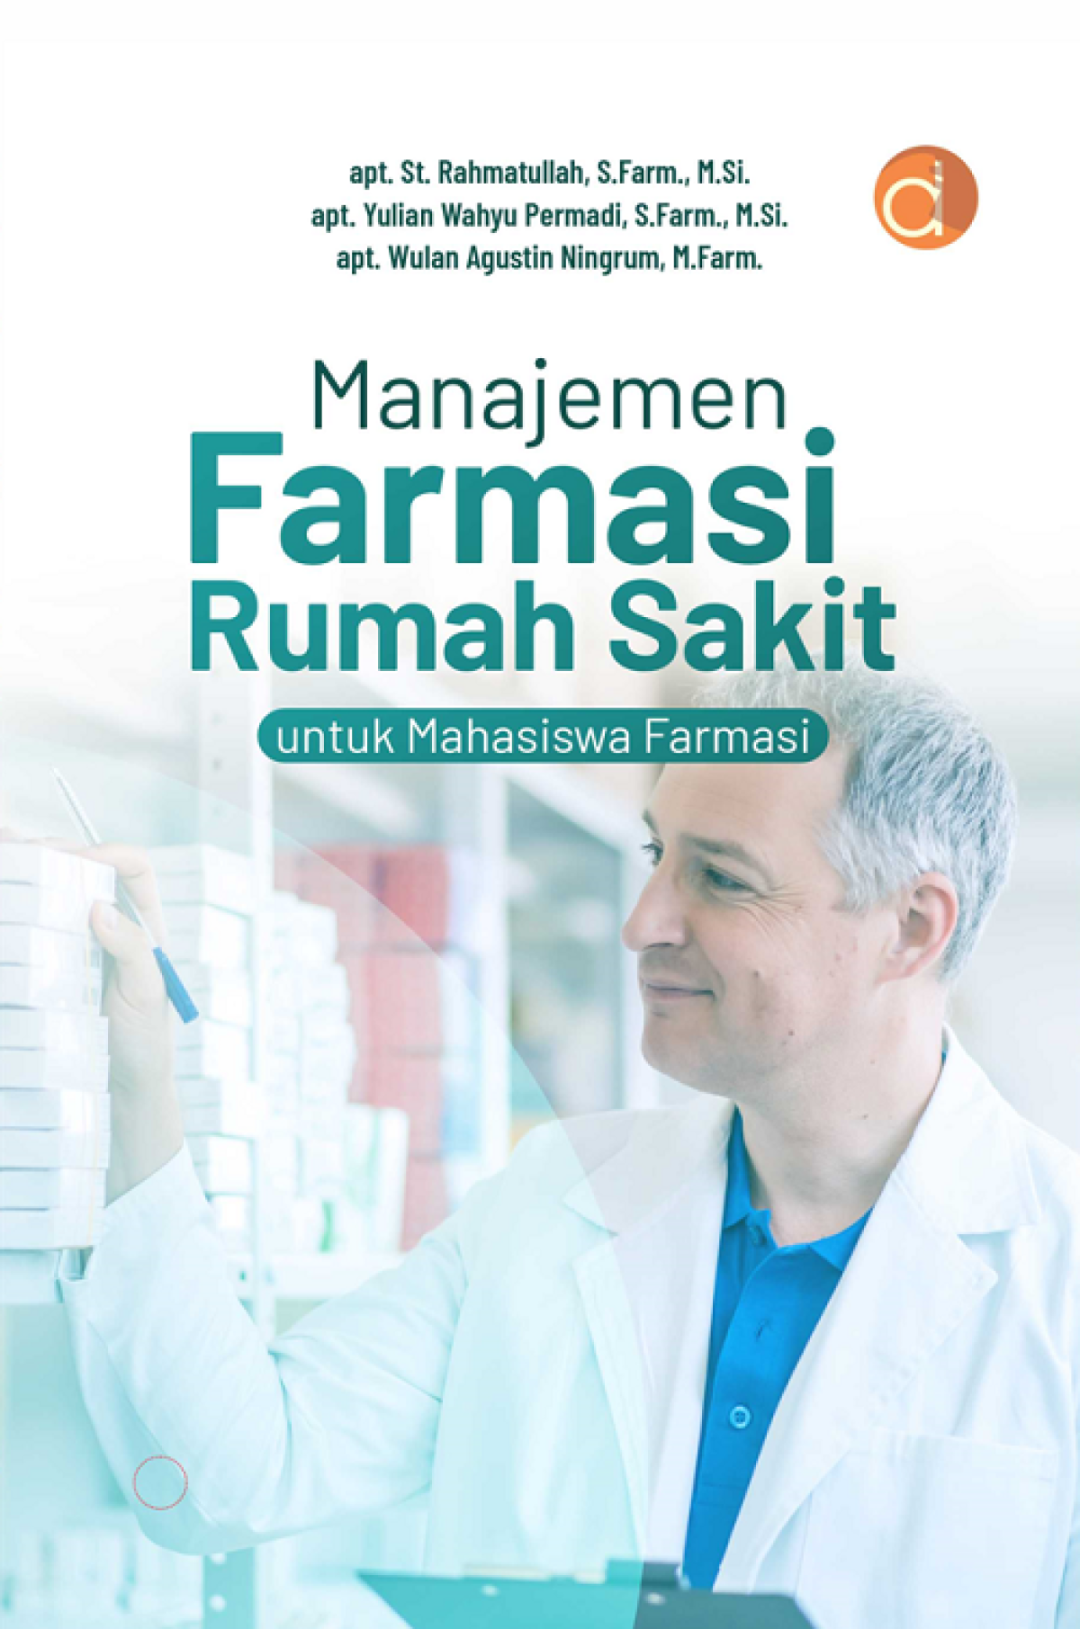 Buku Manajemen Farmasi Rumah Sakit untuk Mahasiswa Farmasi